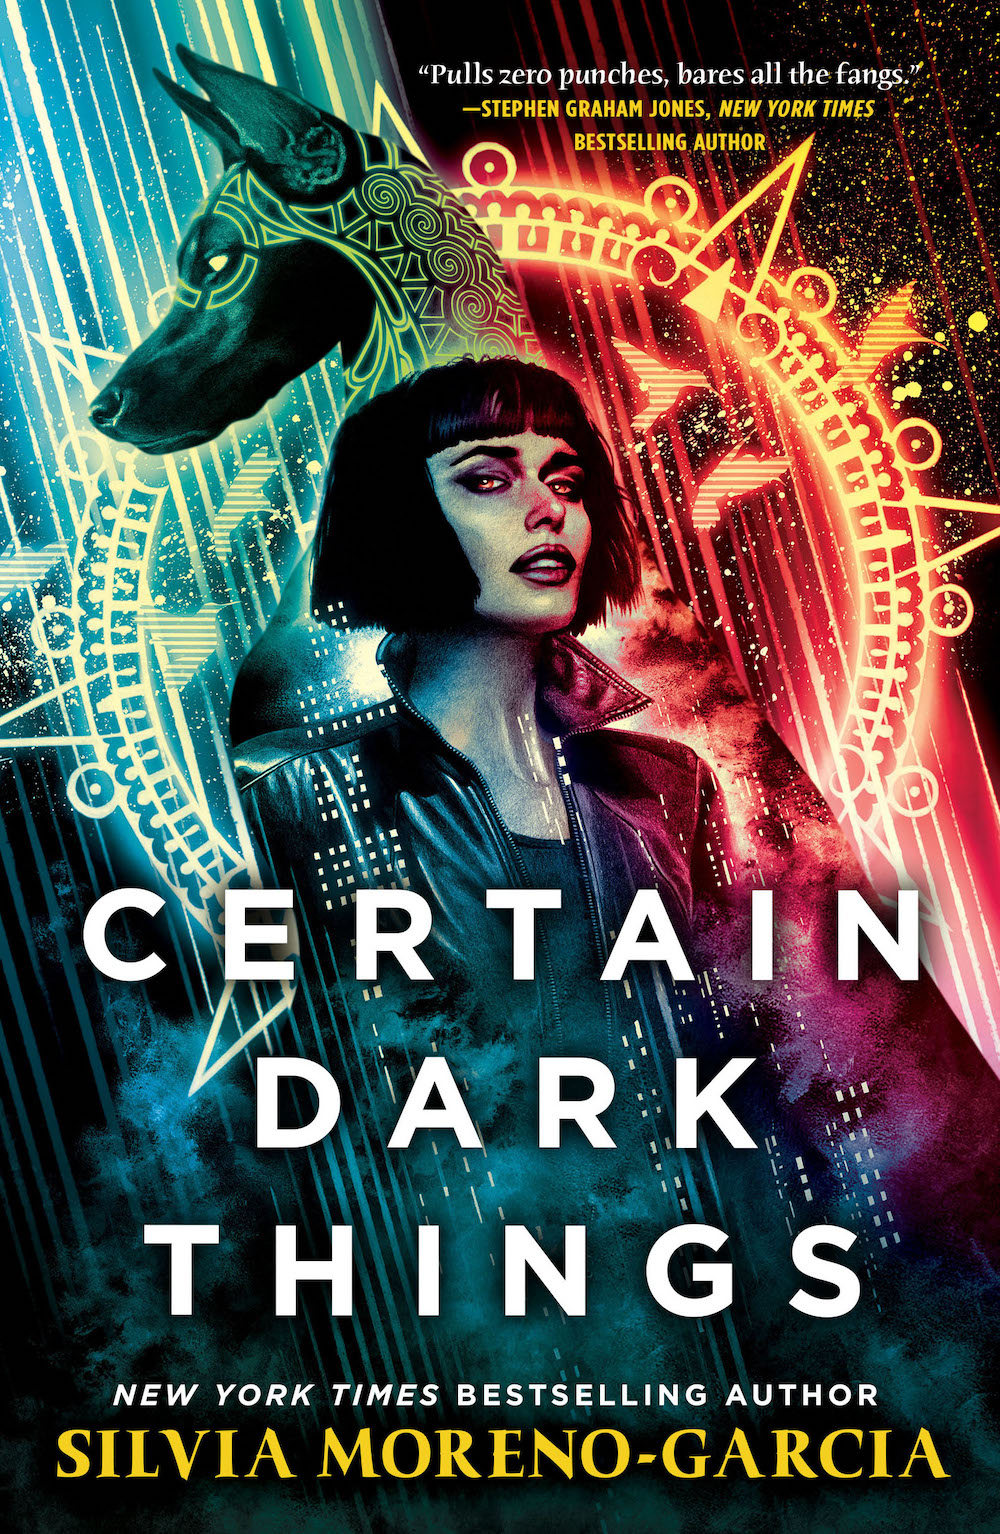 Certain Dark Things - 907